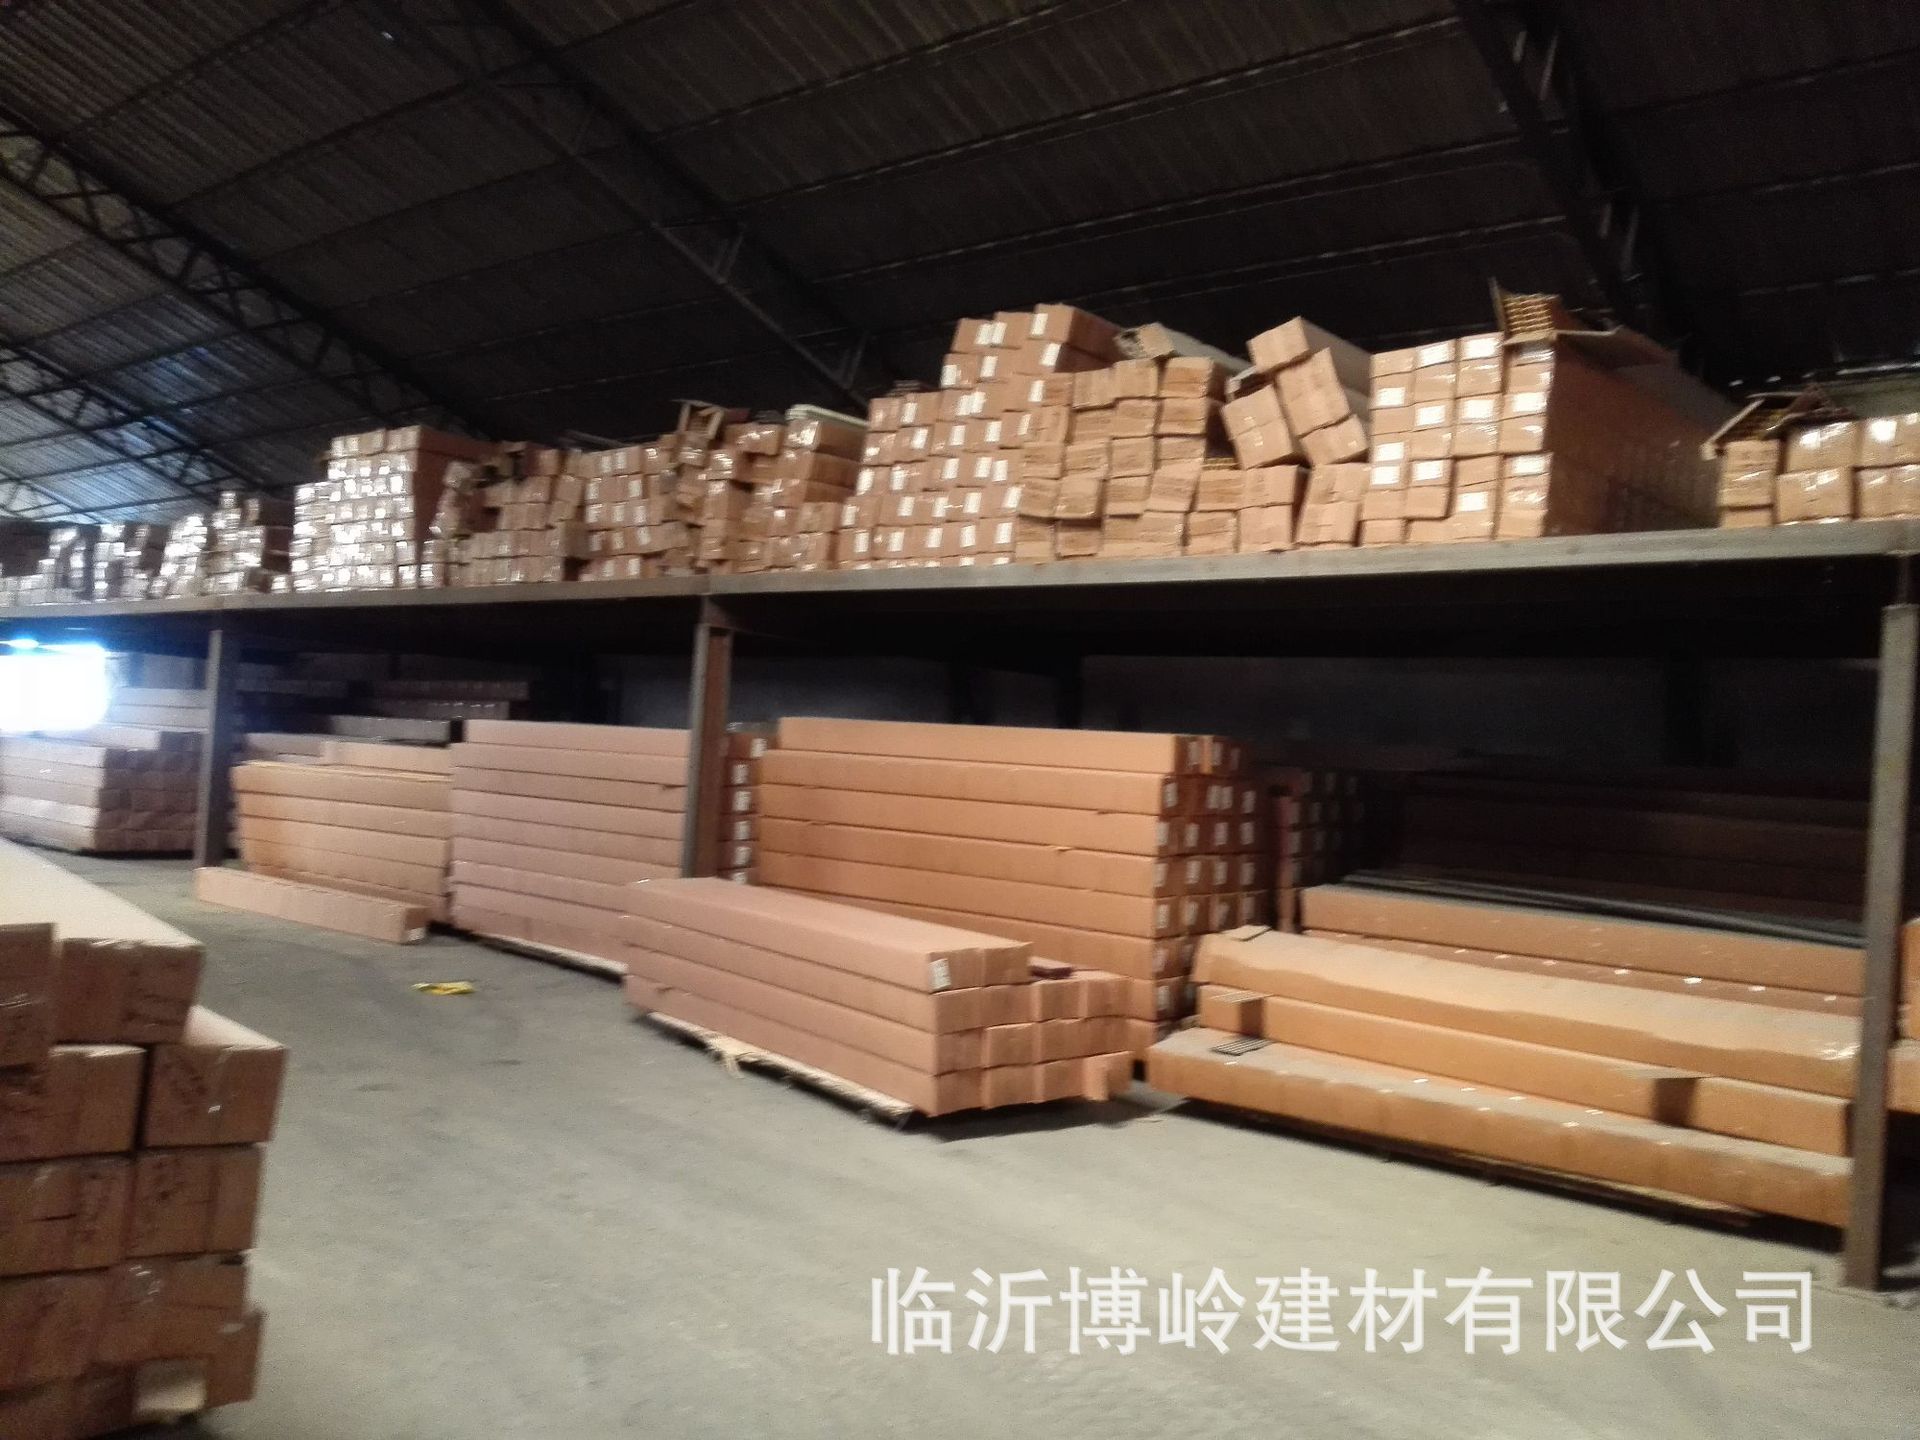 厂家直销 生态木外墙板 150平面外墙板/浮雕 防水阻燃PVC木塑墙板示例图18